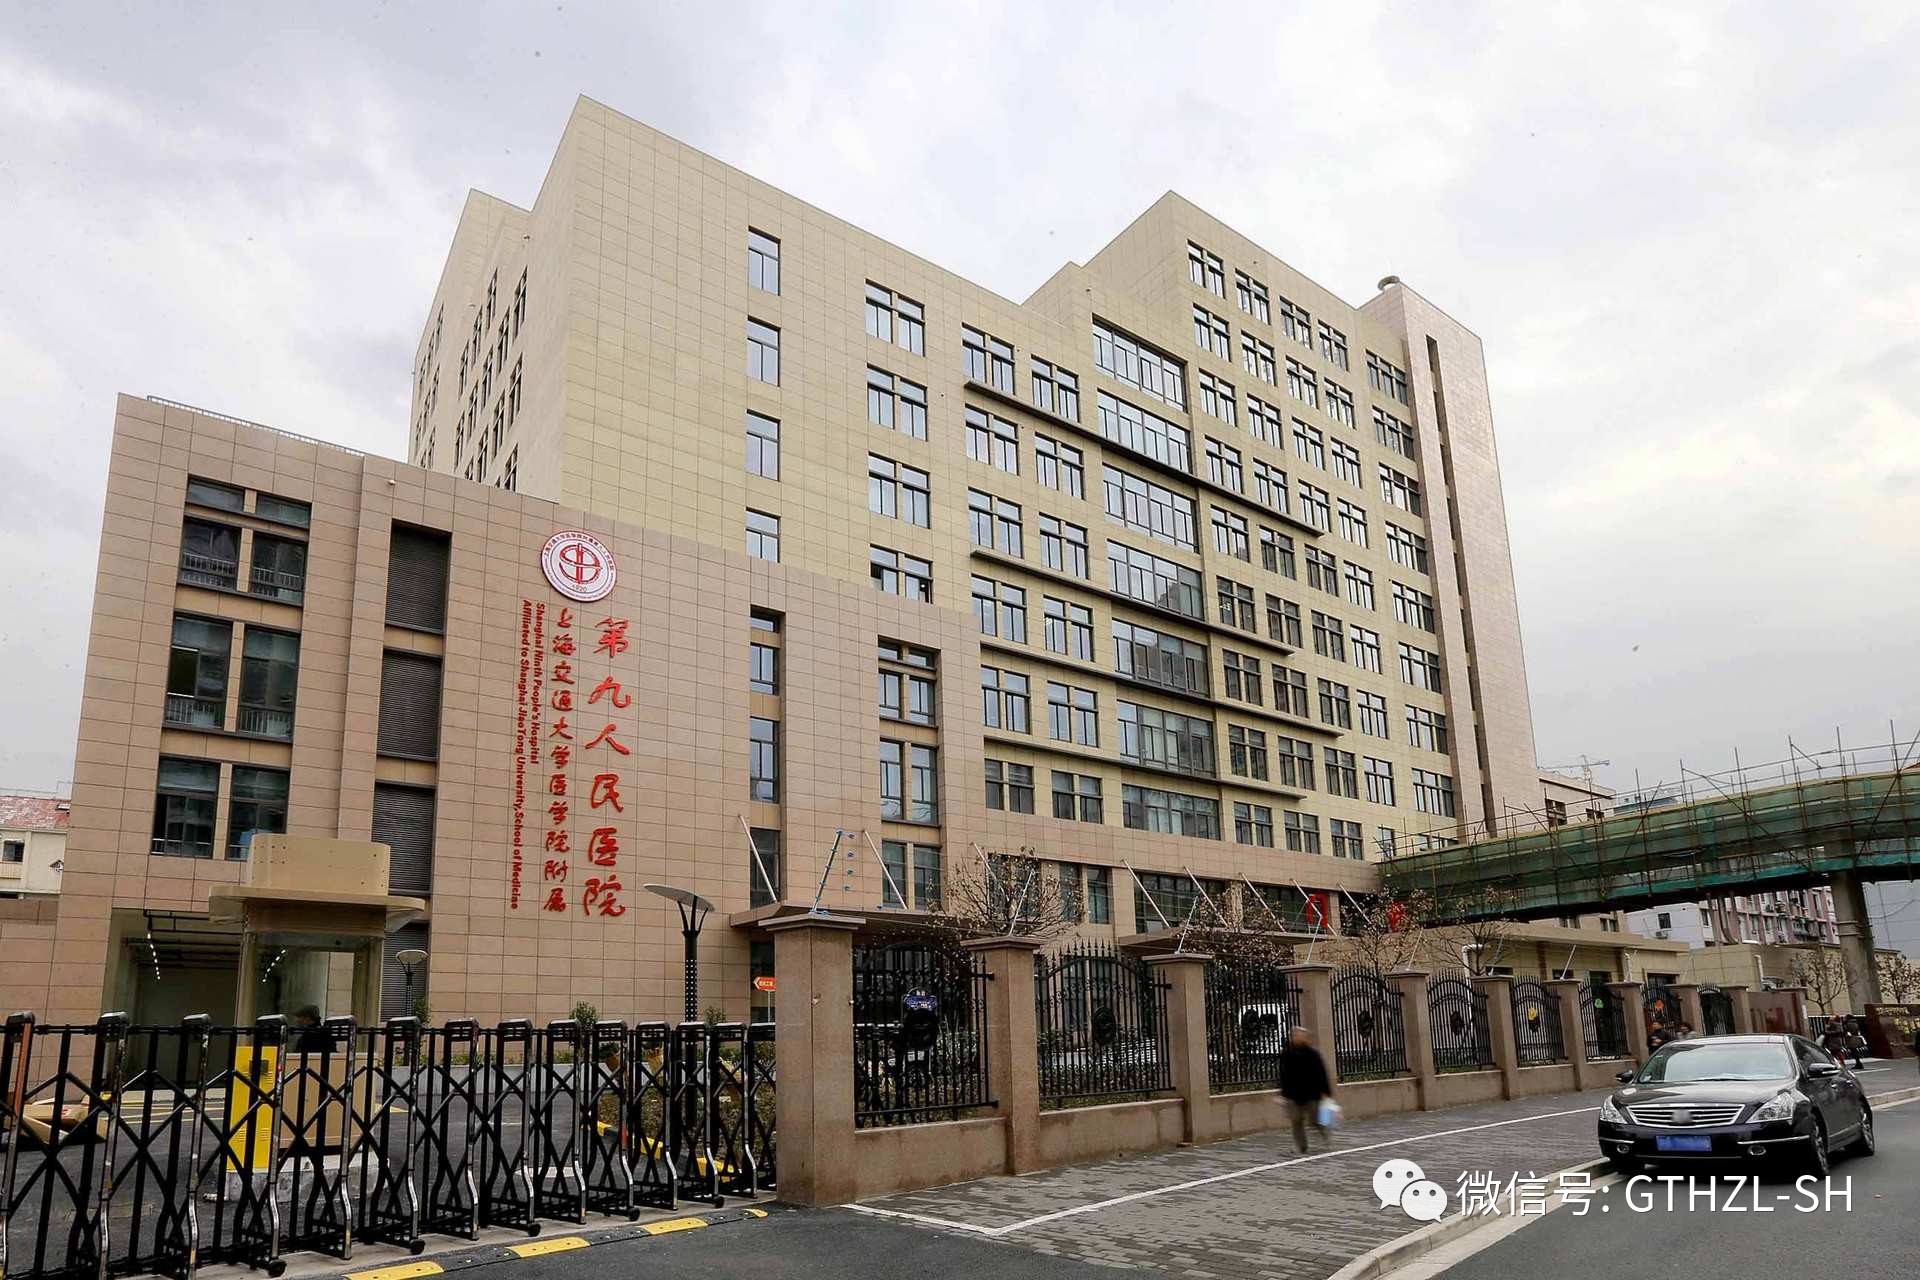 狐臭,血管瘤,试管婴儿,双眼皮手术等常规病症…… 上海市第六人民医院